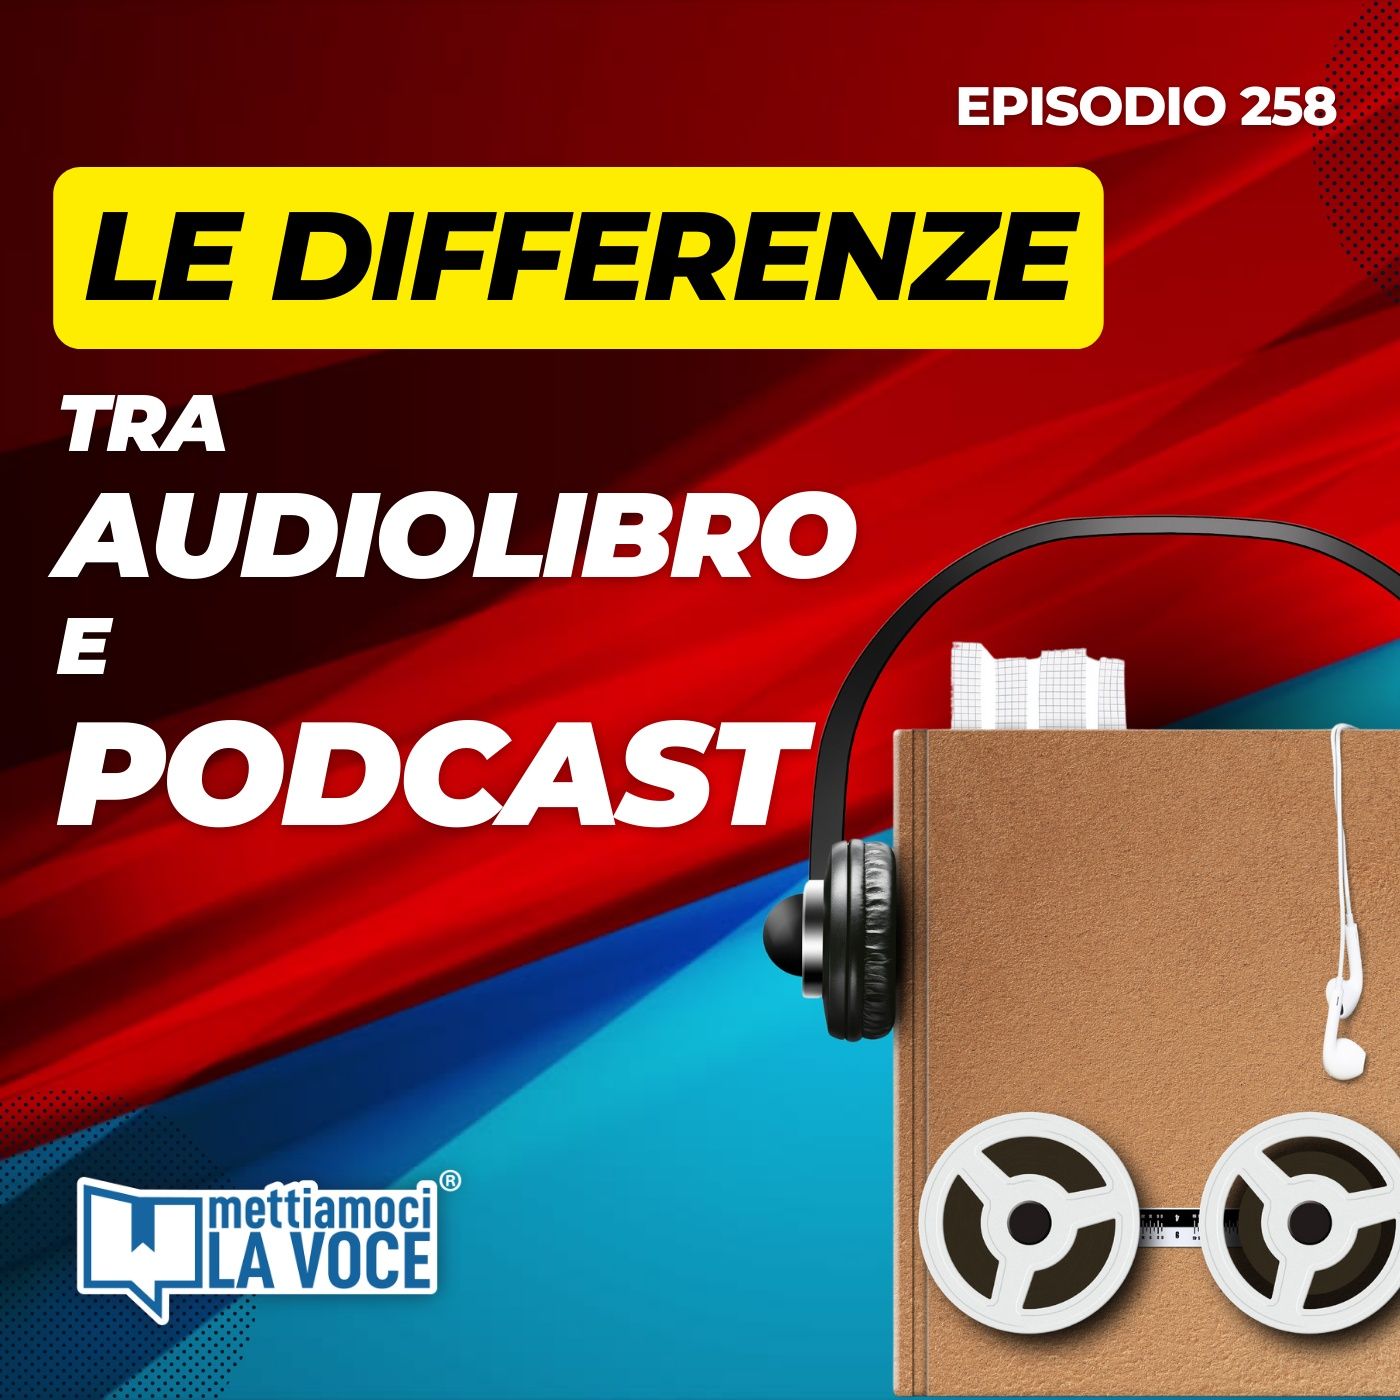 Le differenze tra audiolibro e podcast